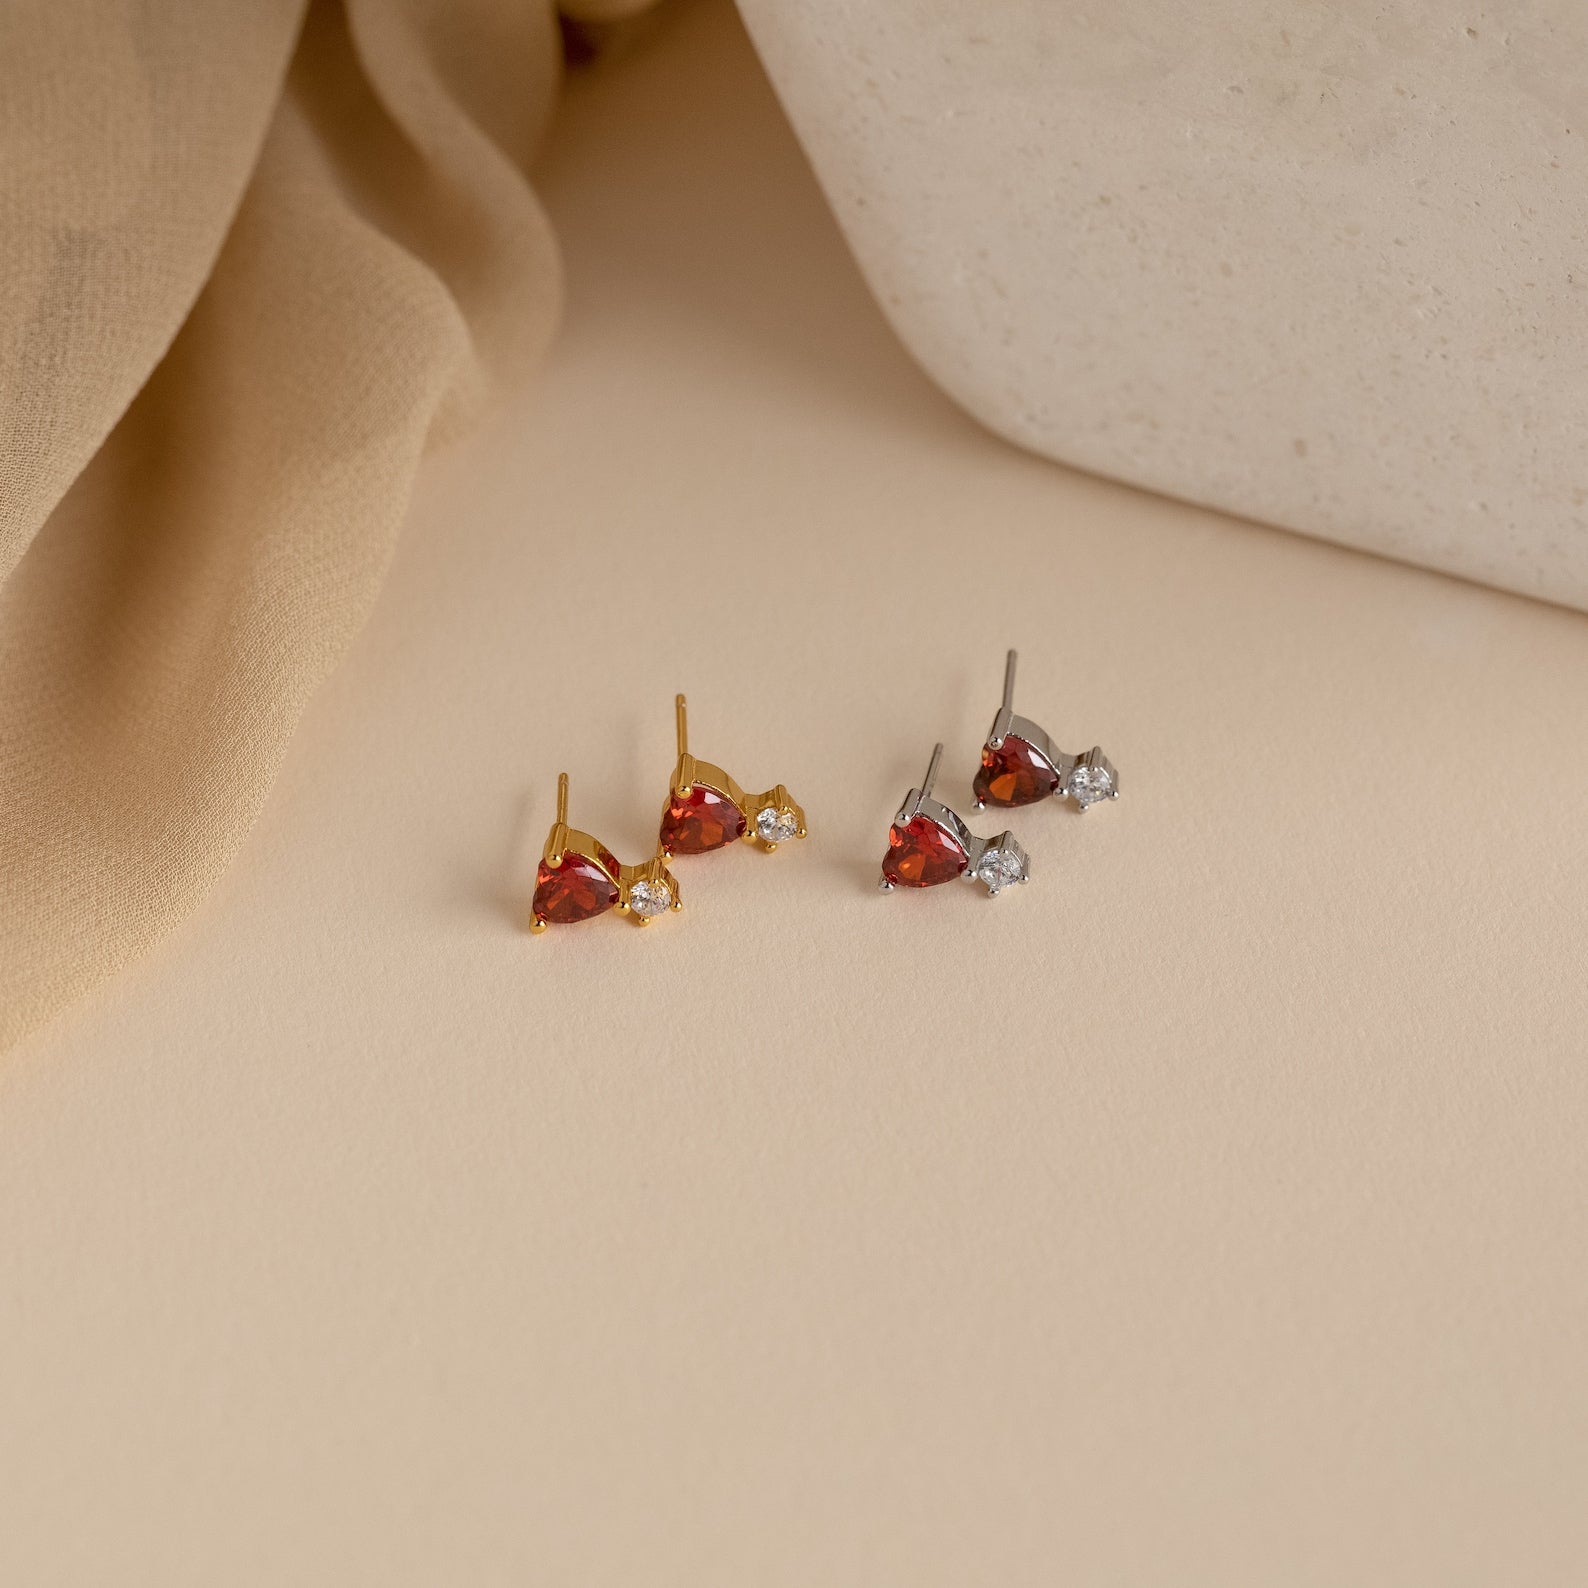 Tiny Cz Stud Earrings Dainty Minimalist Earrings Sterling Silver Earring  Gold Stud Earrings PAIR 